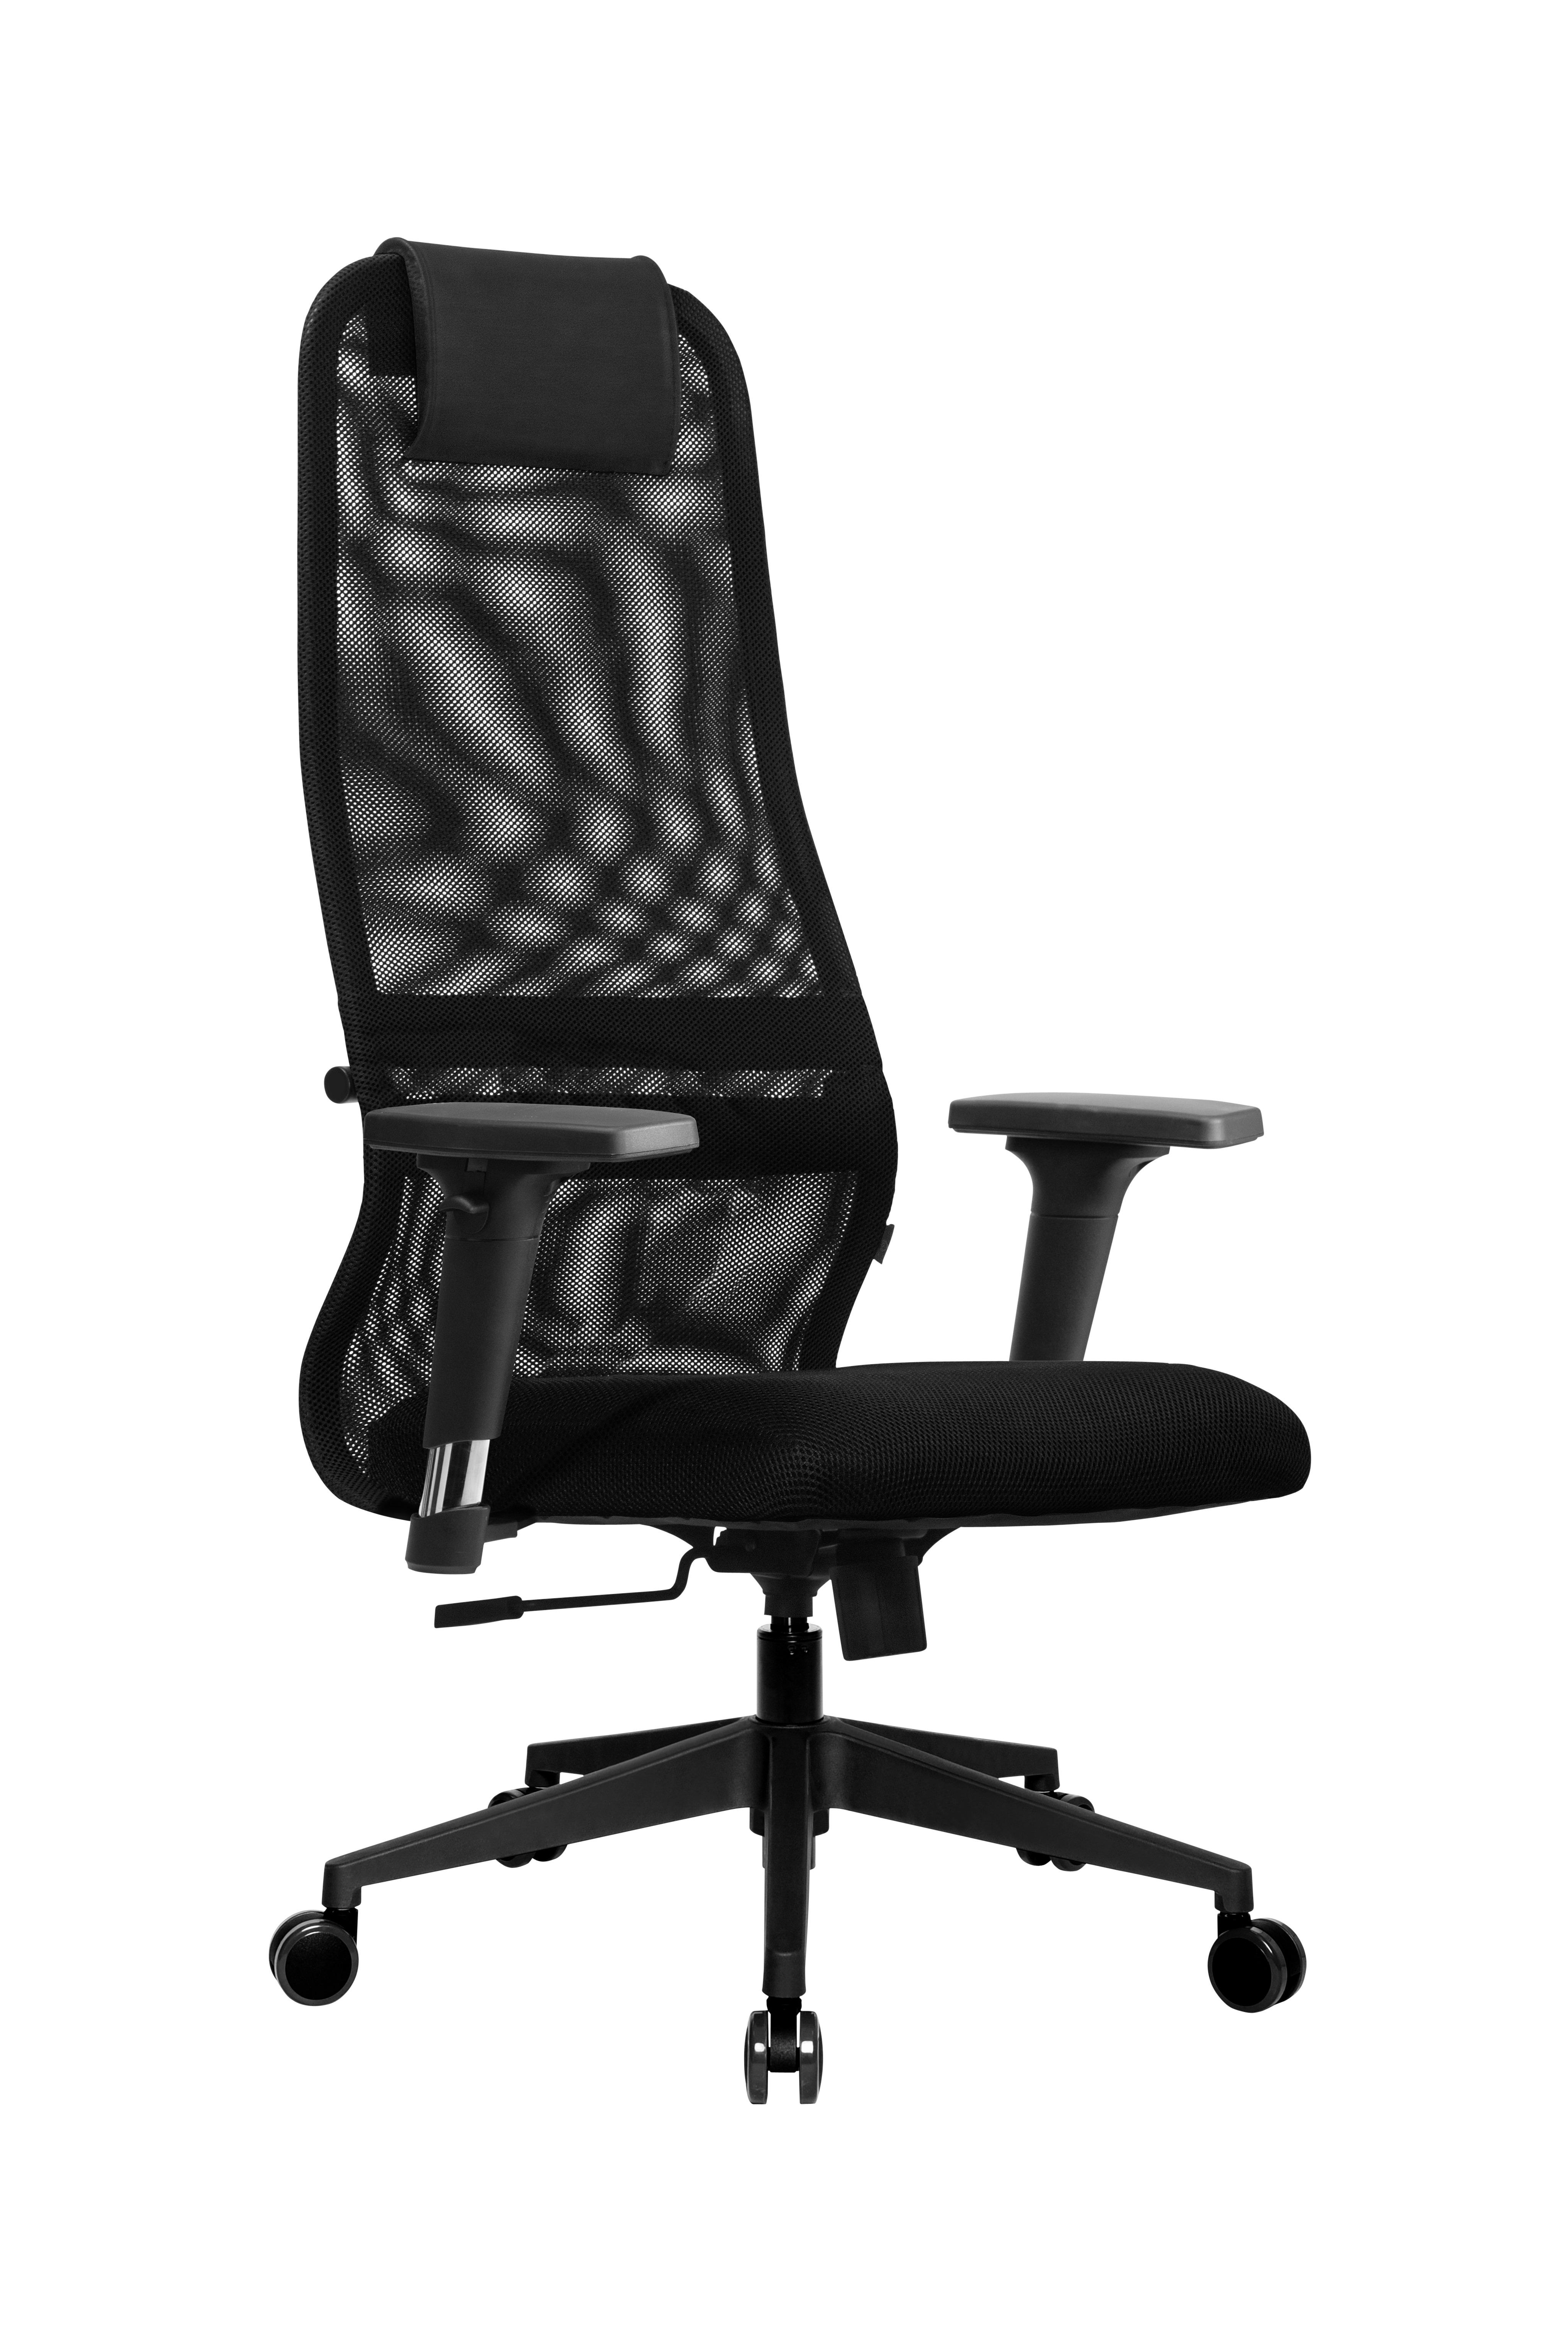 Kancelářská Židle Aurelia - černá, Moderní, kov/textil (68/118-130/71cm) - Premium Living